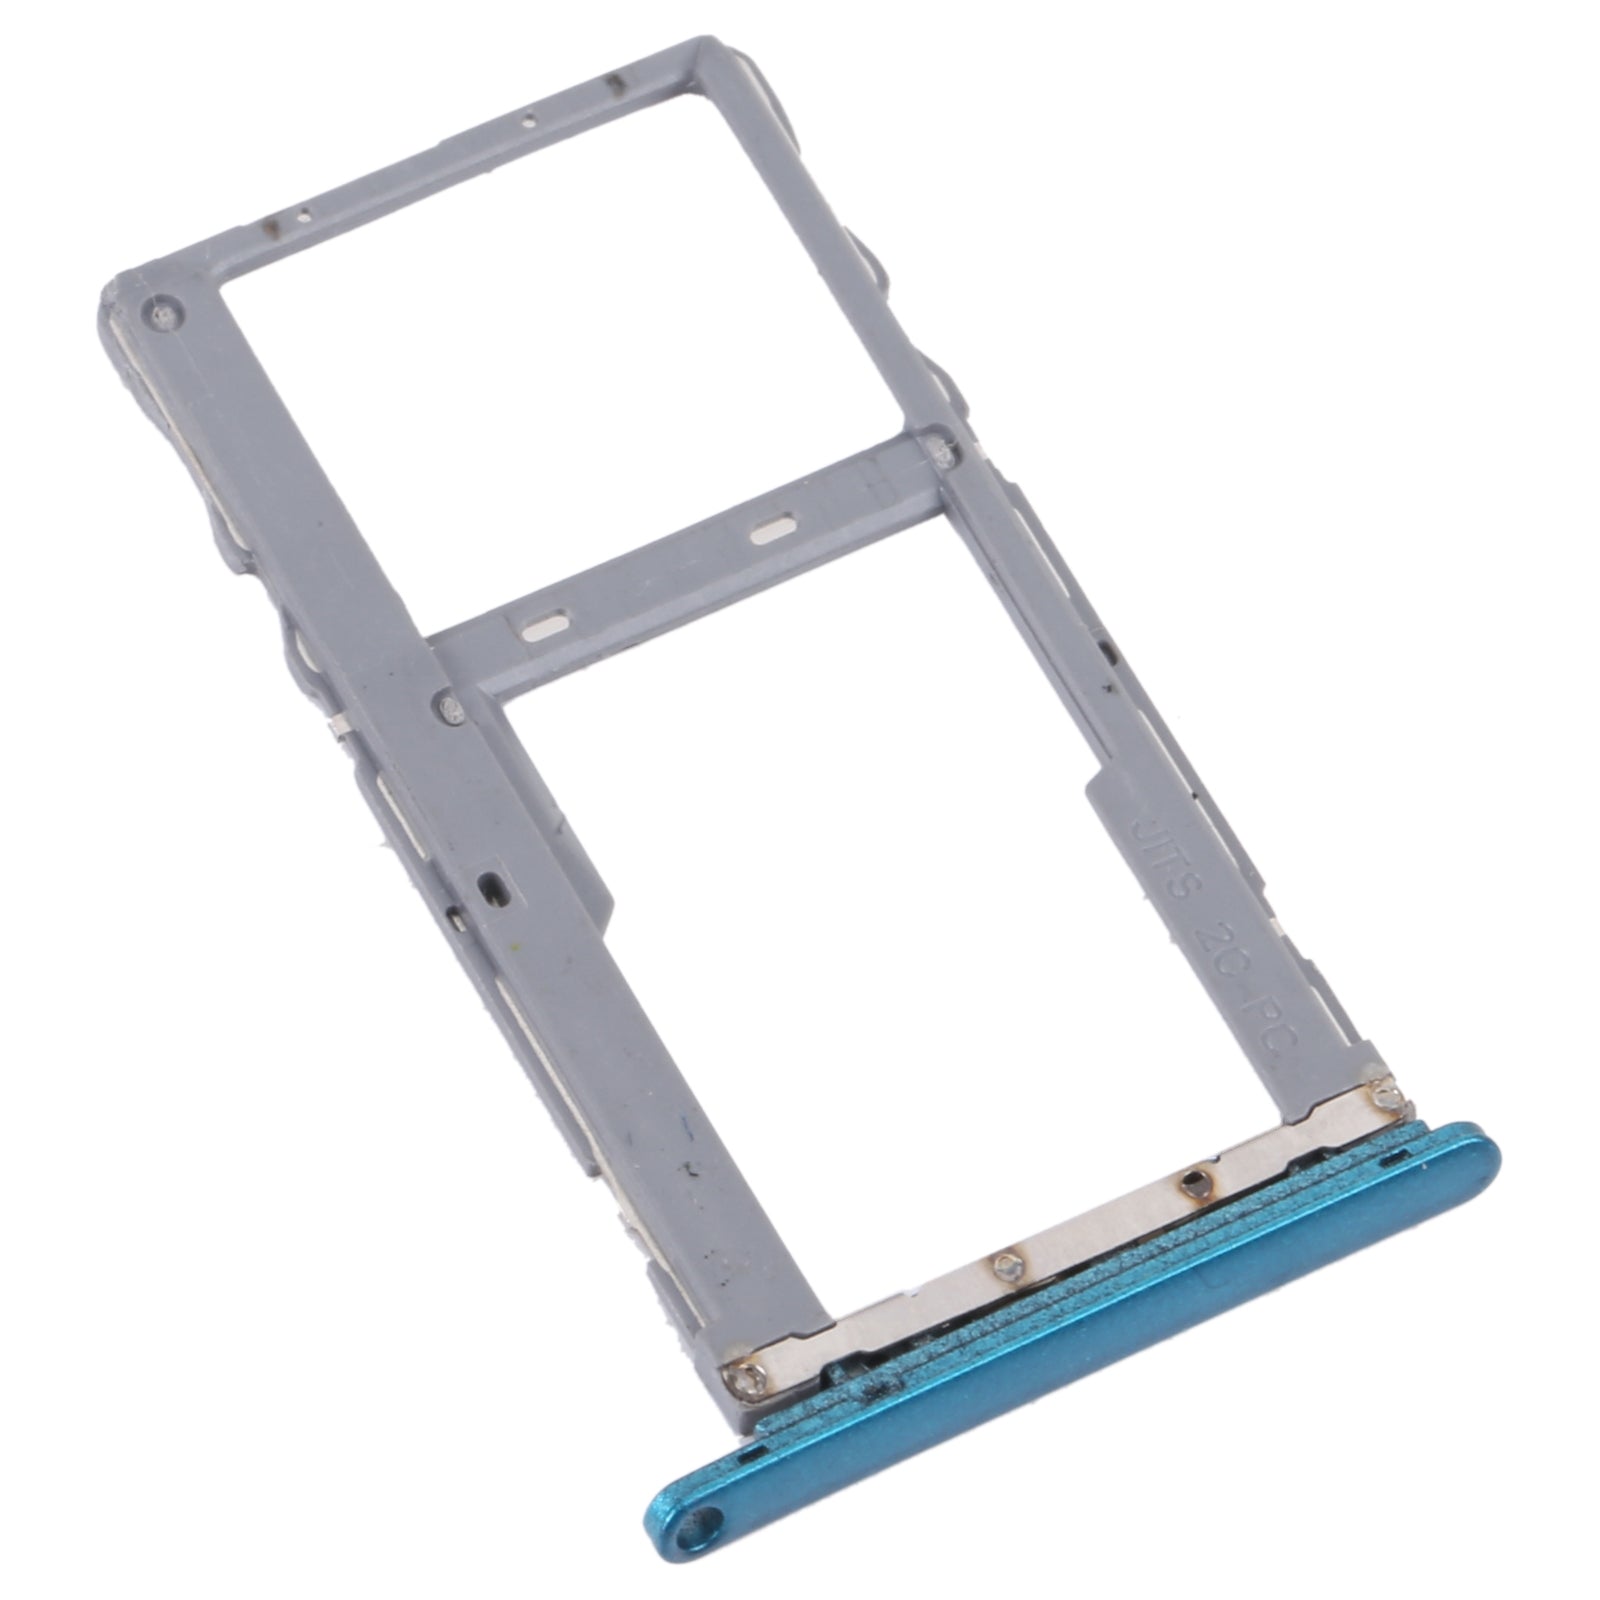 SIM / Micro SD Holder Tray for Alcatel 3L 2020 Green